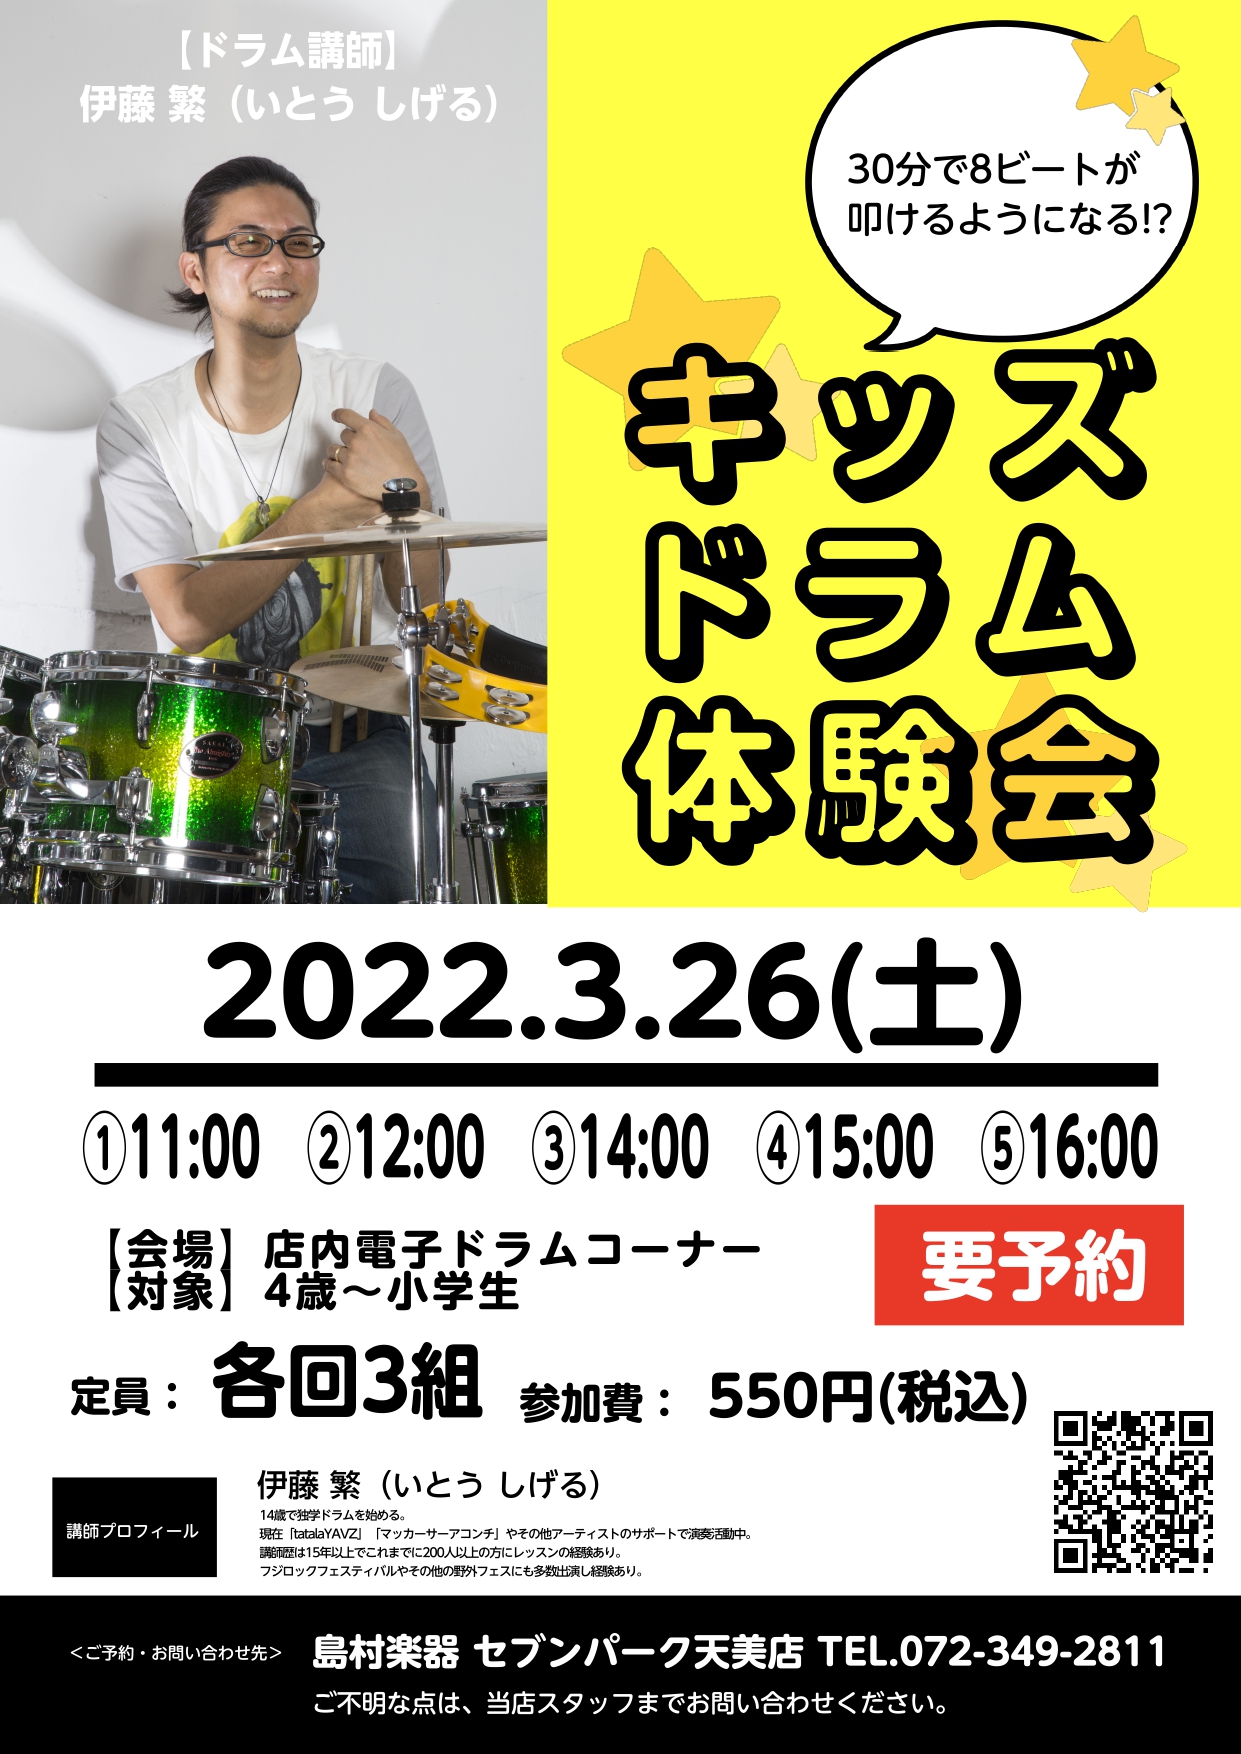 【イベント】3/26(日) キッズドラム体験会開催！